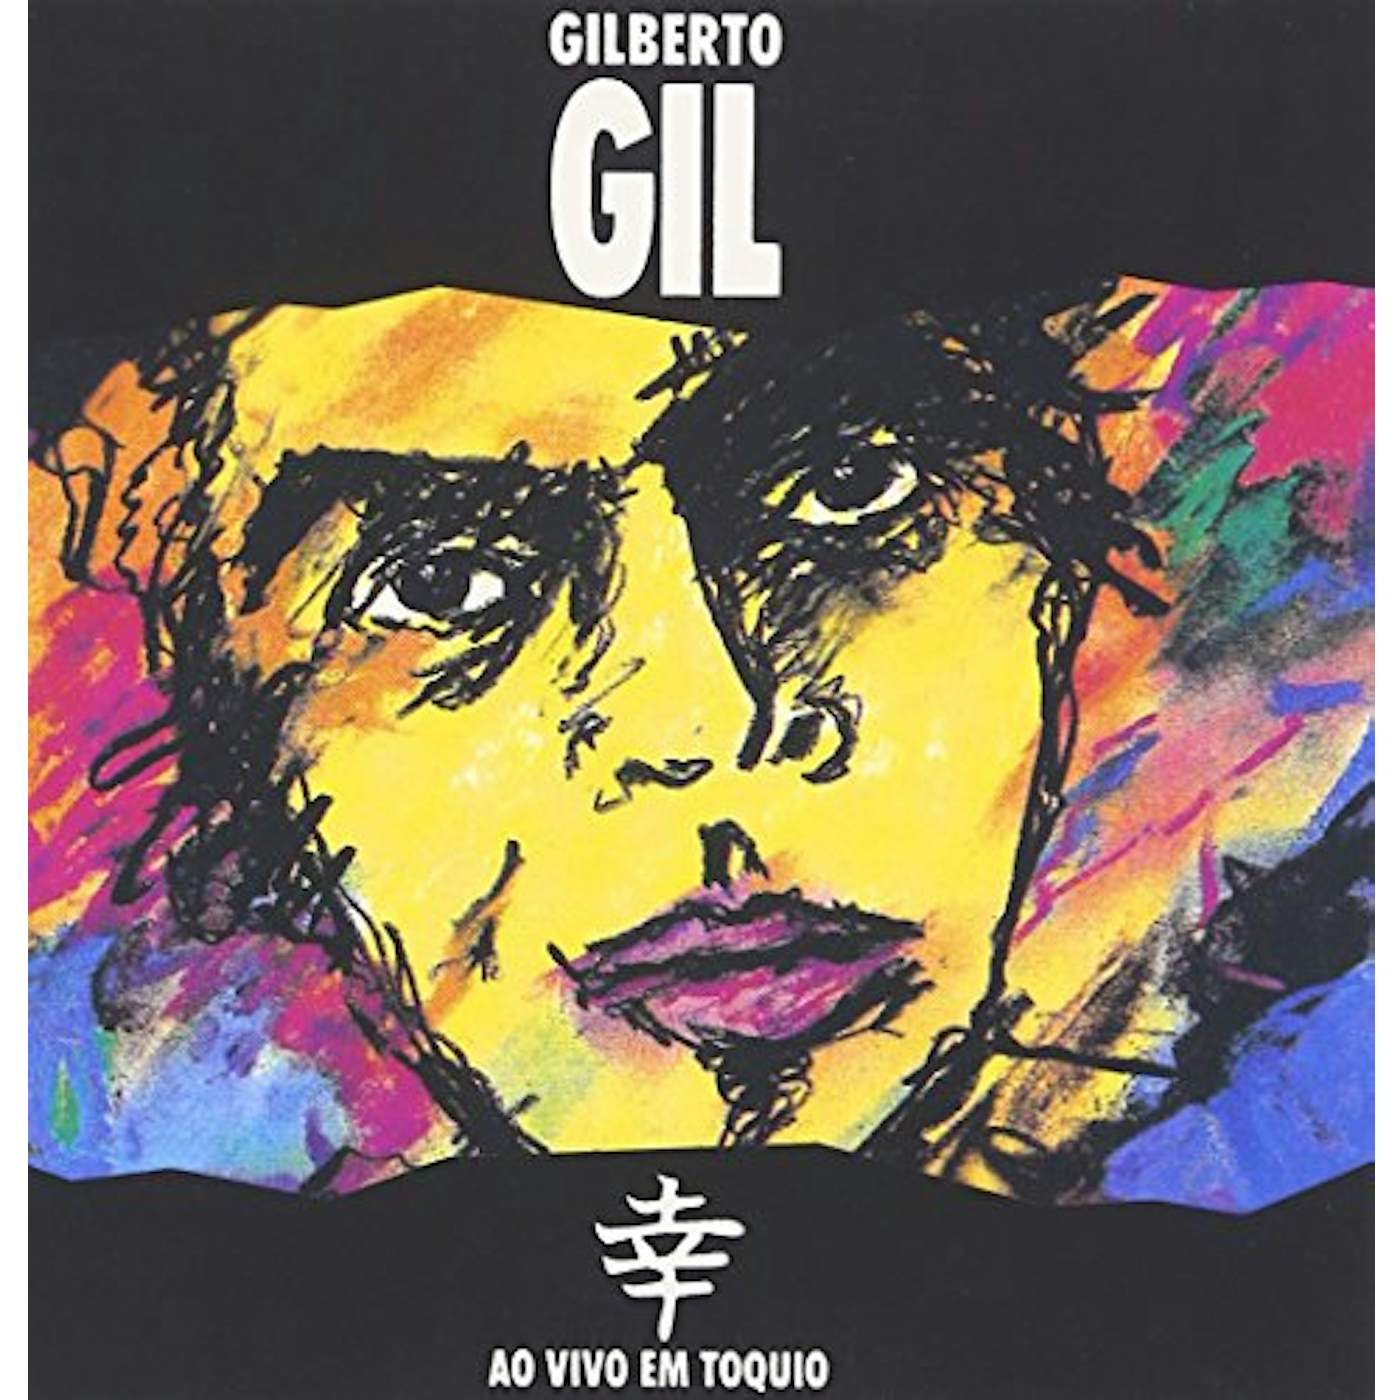 Gilberto Gil AO VIVO EM TOQUIO CD